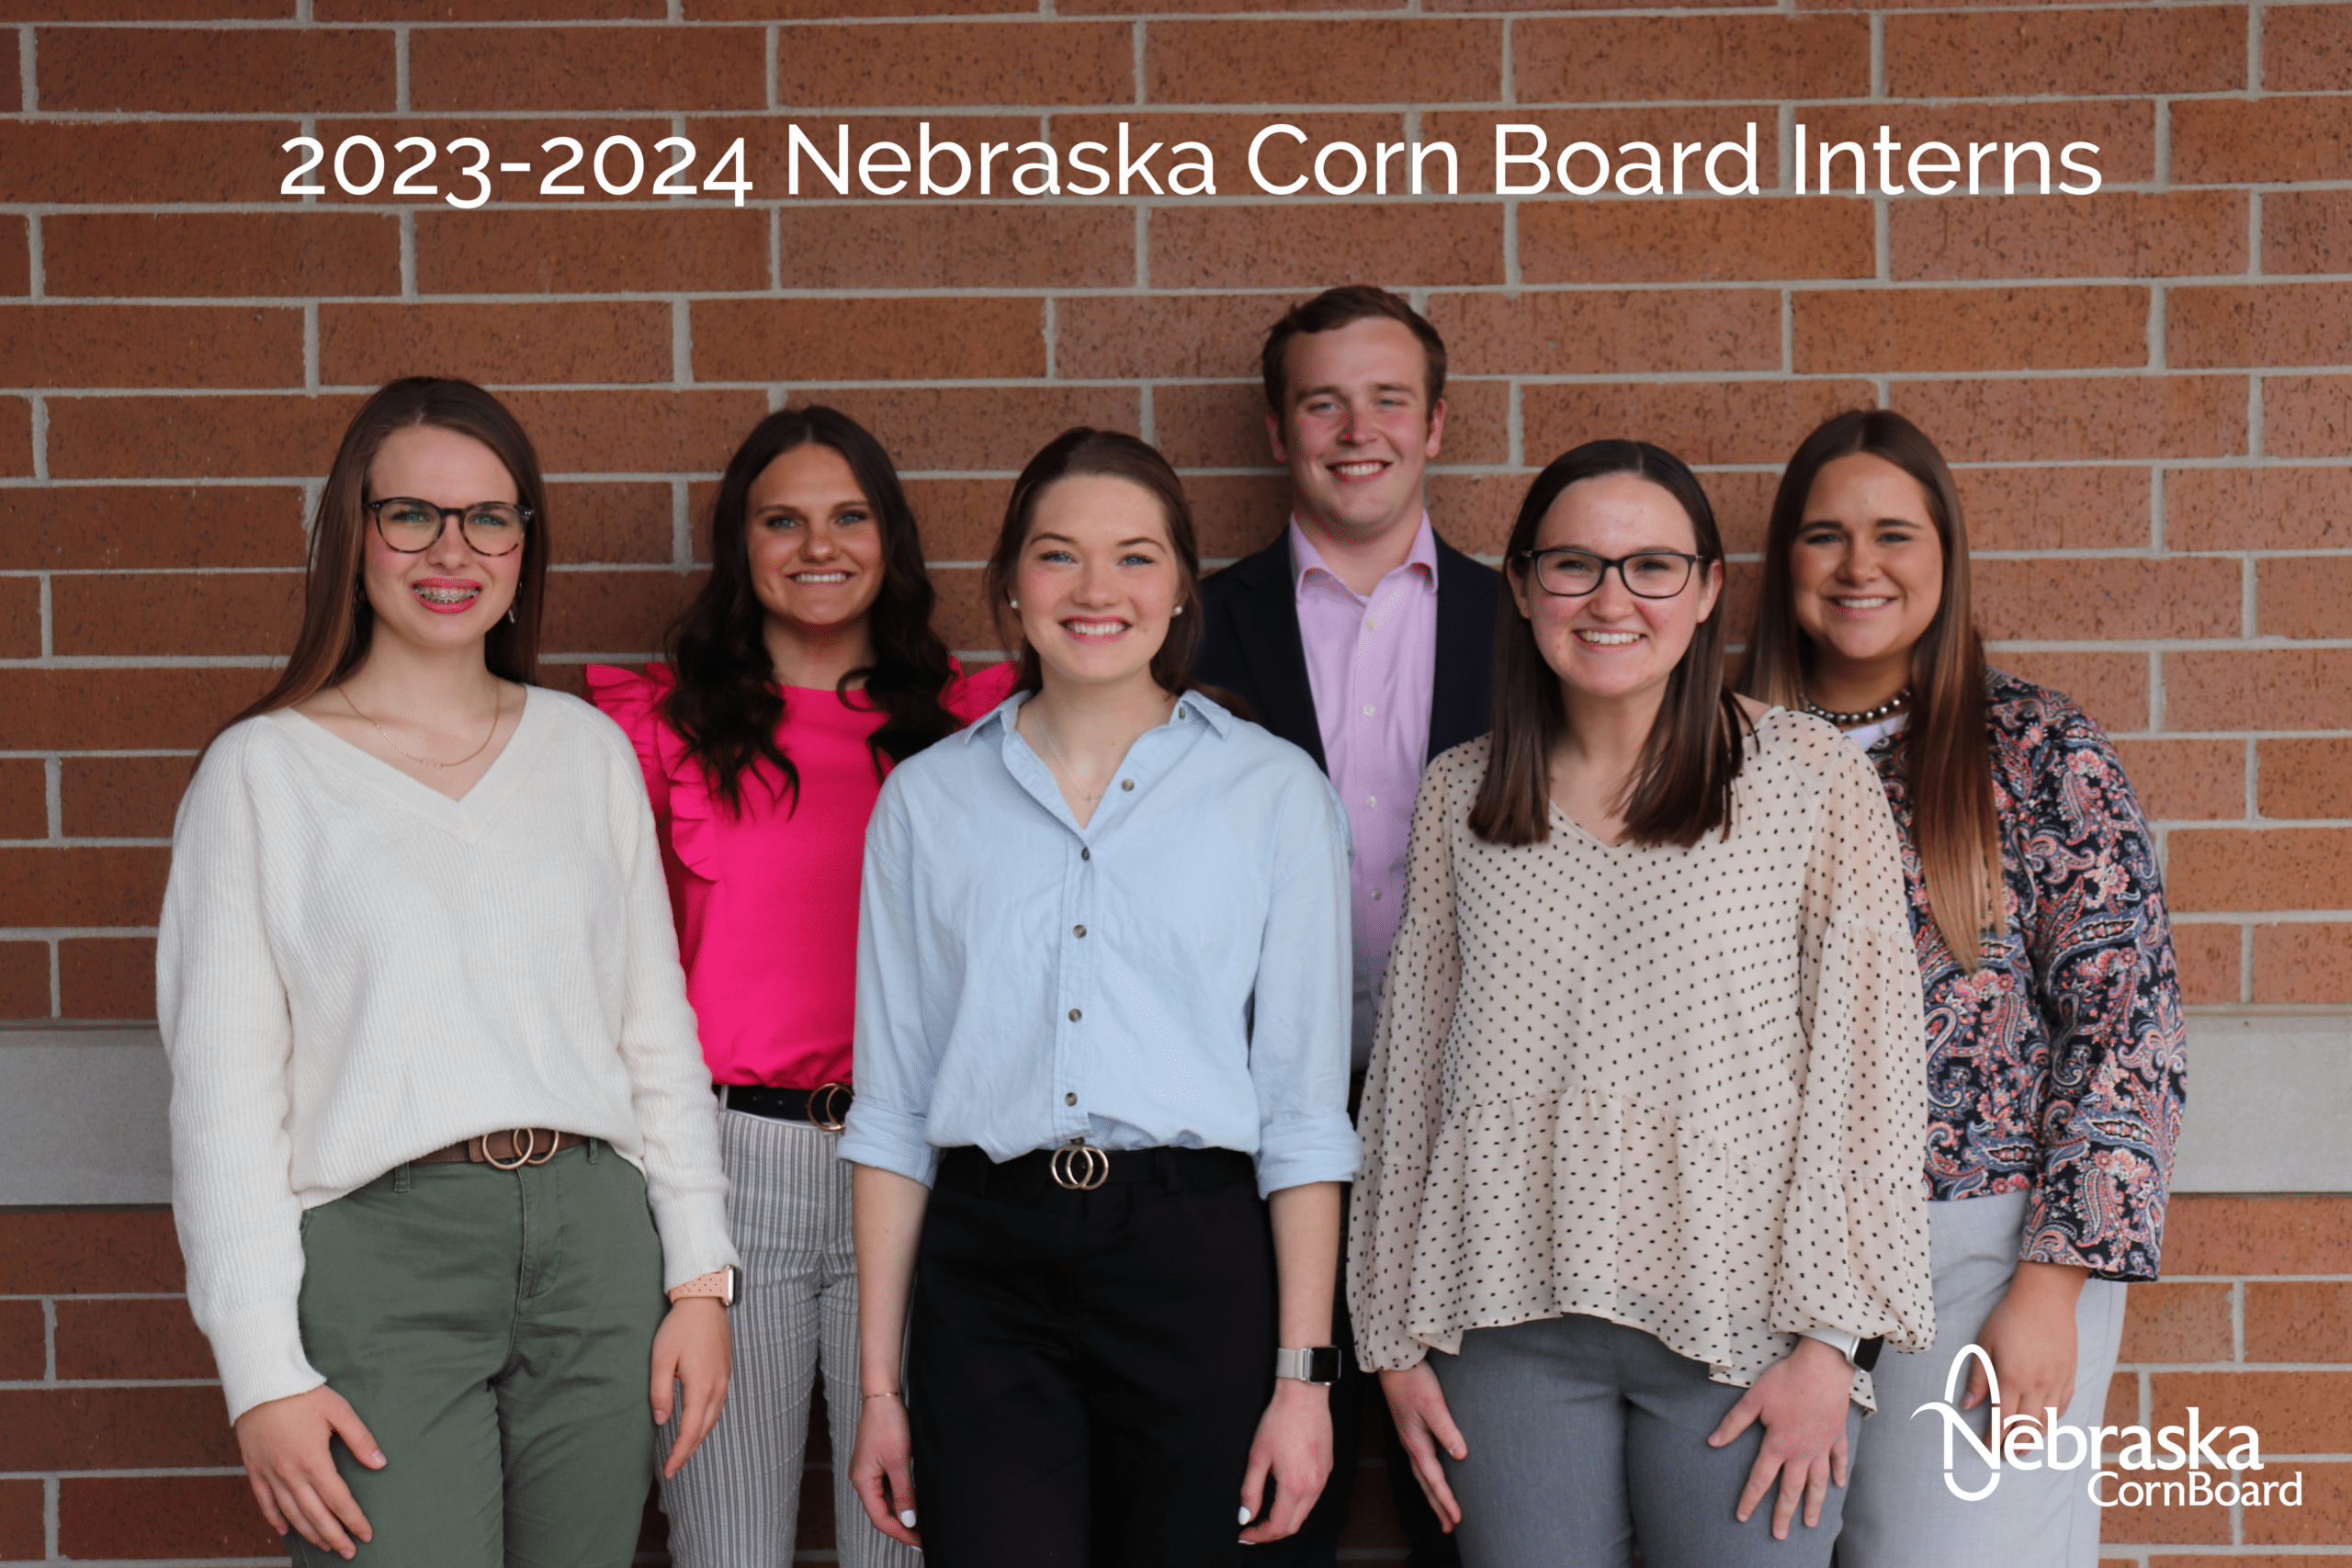 2023-2024 Nebraska Corn Board interns